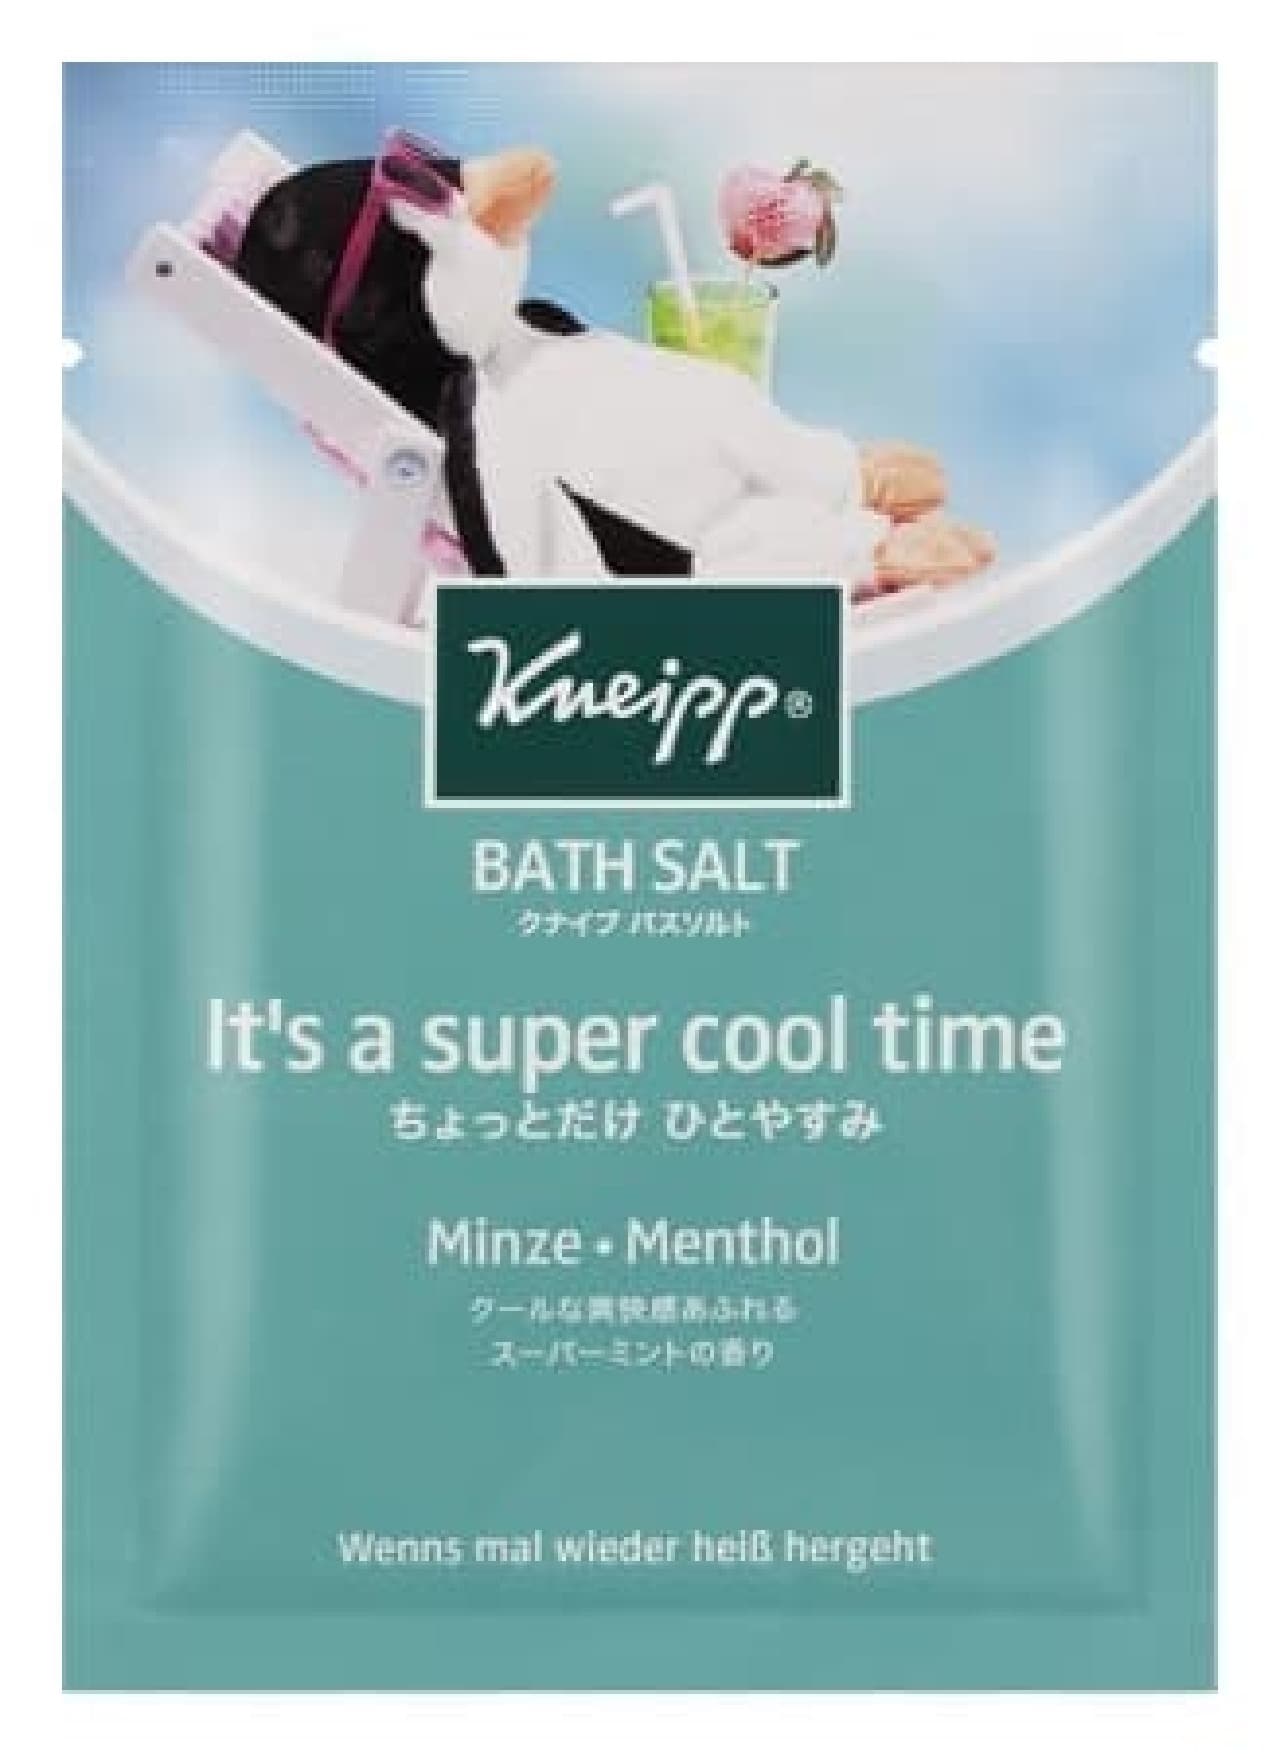 Kneipp Bath Salts Lime Mint Fragrance